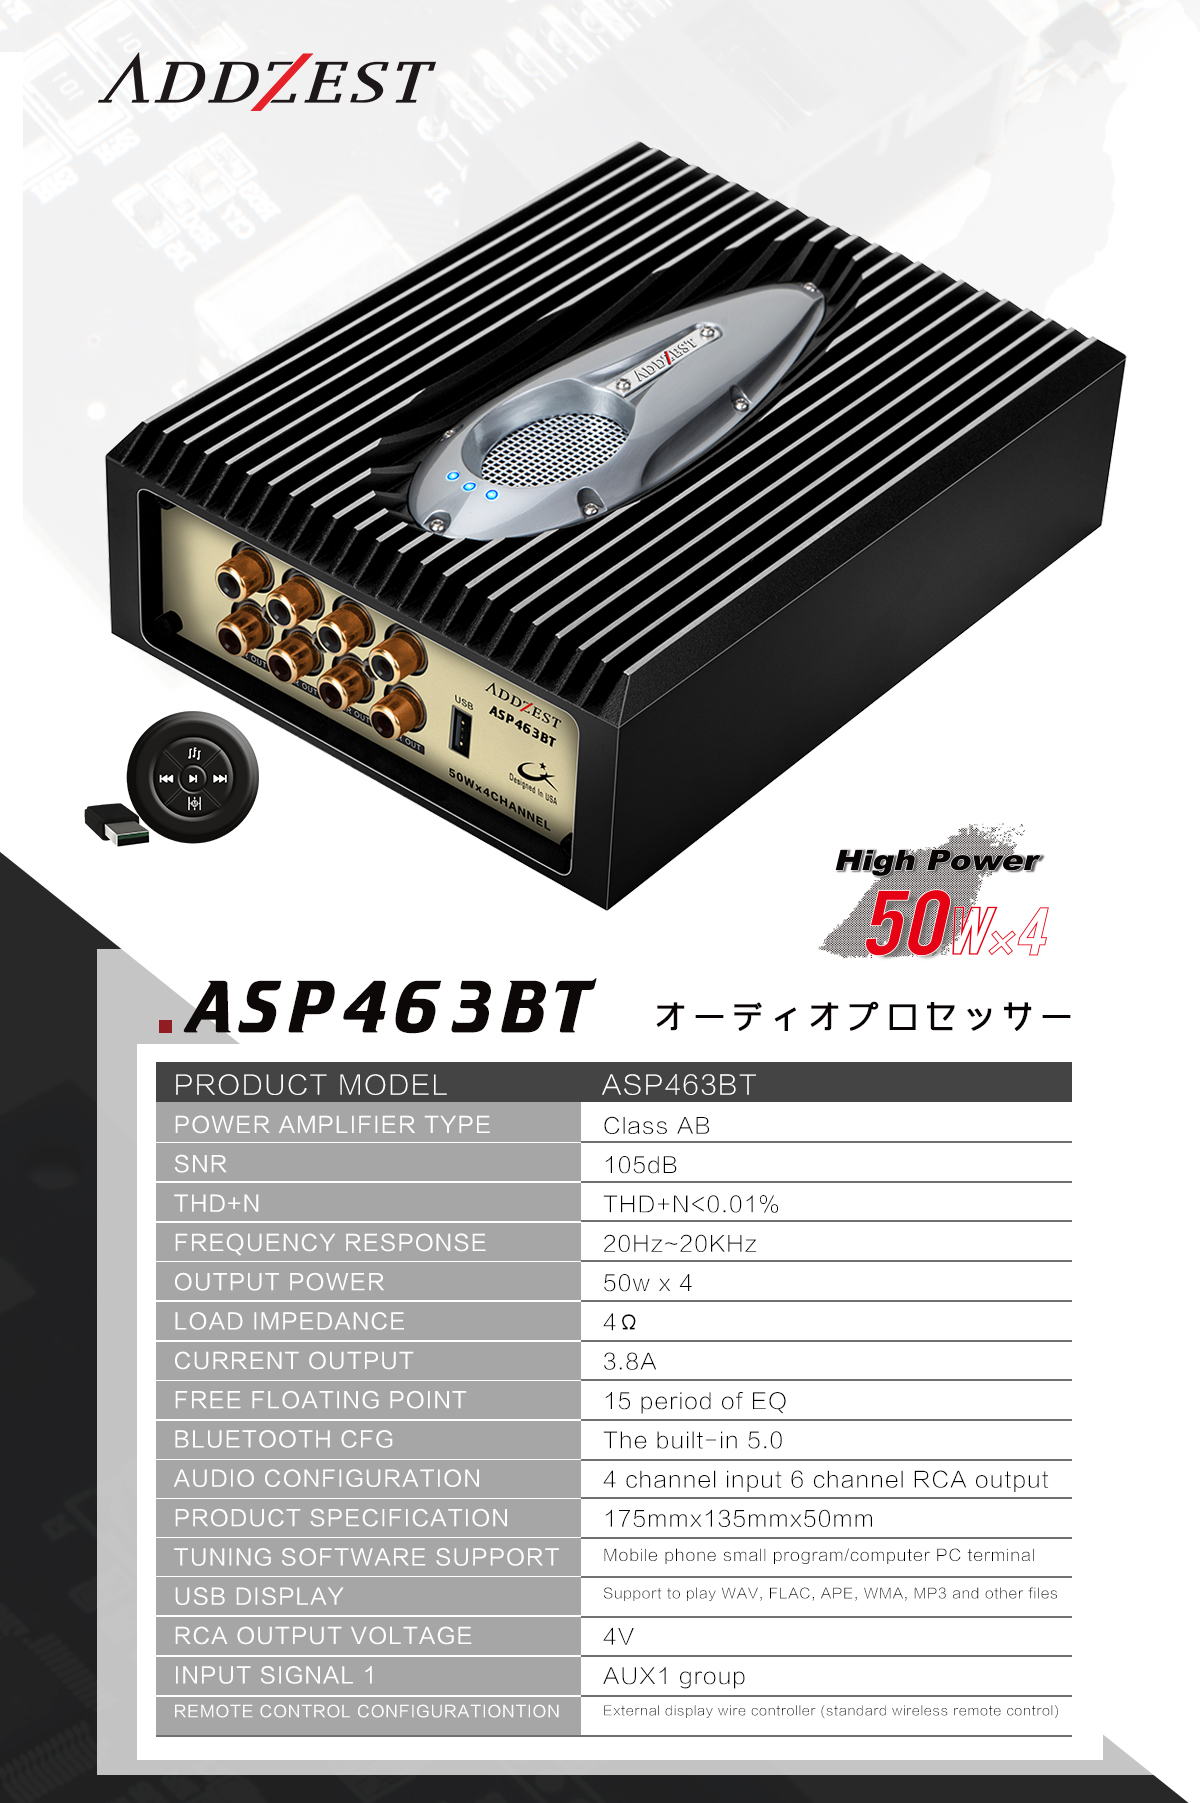  ASP463BT